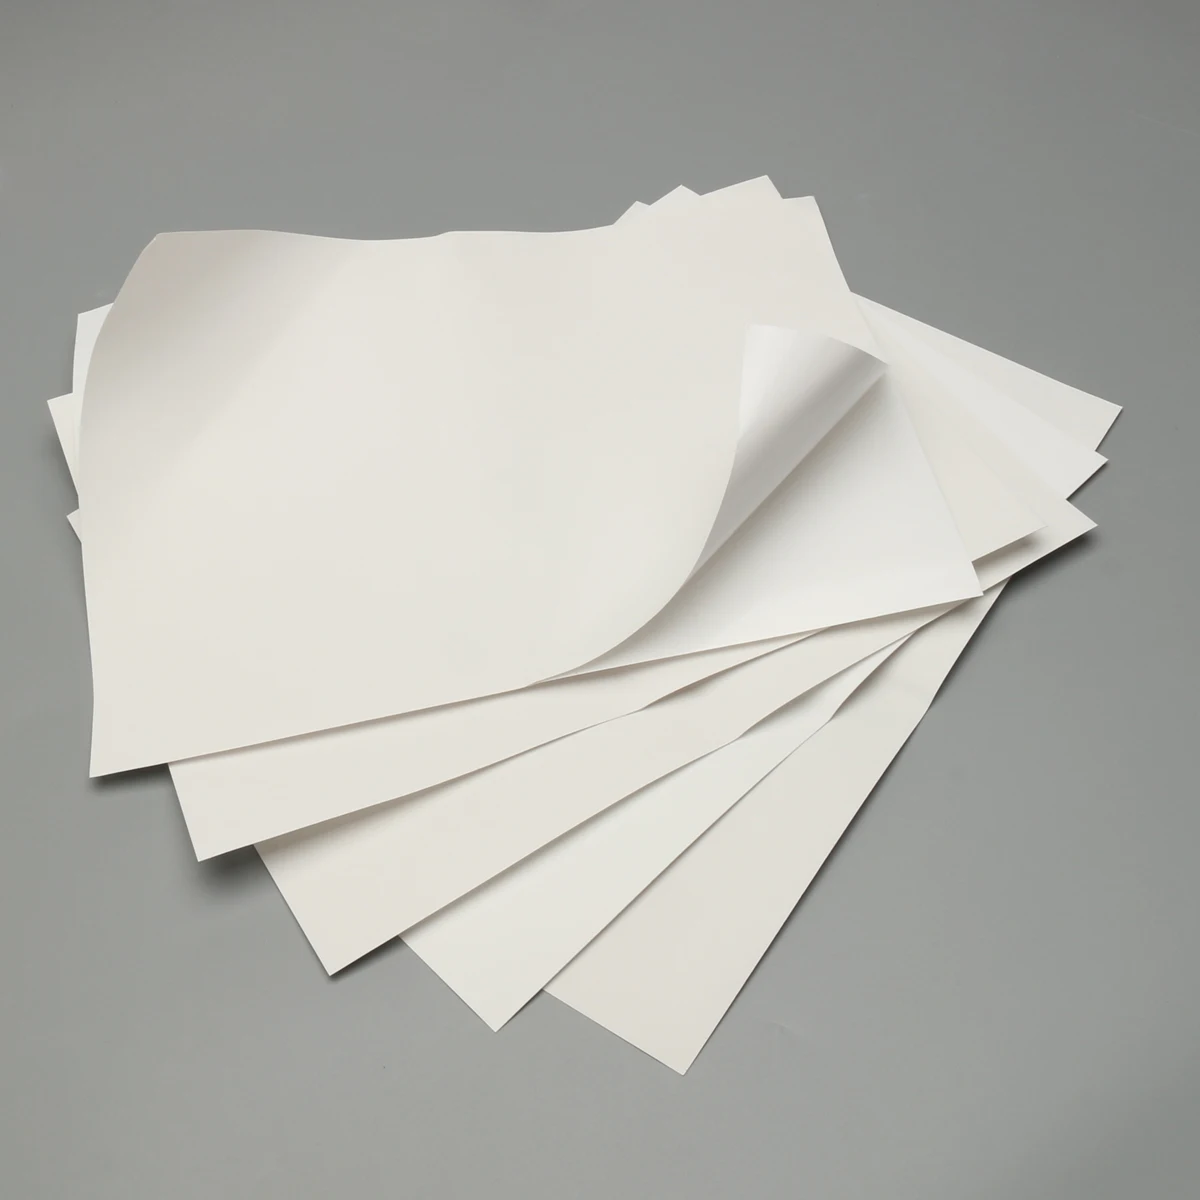 Лист бумаги. Белая бумага. Листовая бумага. Бумажный лист. Класс белизны бумаги